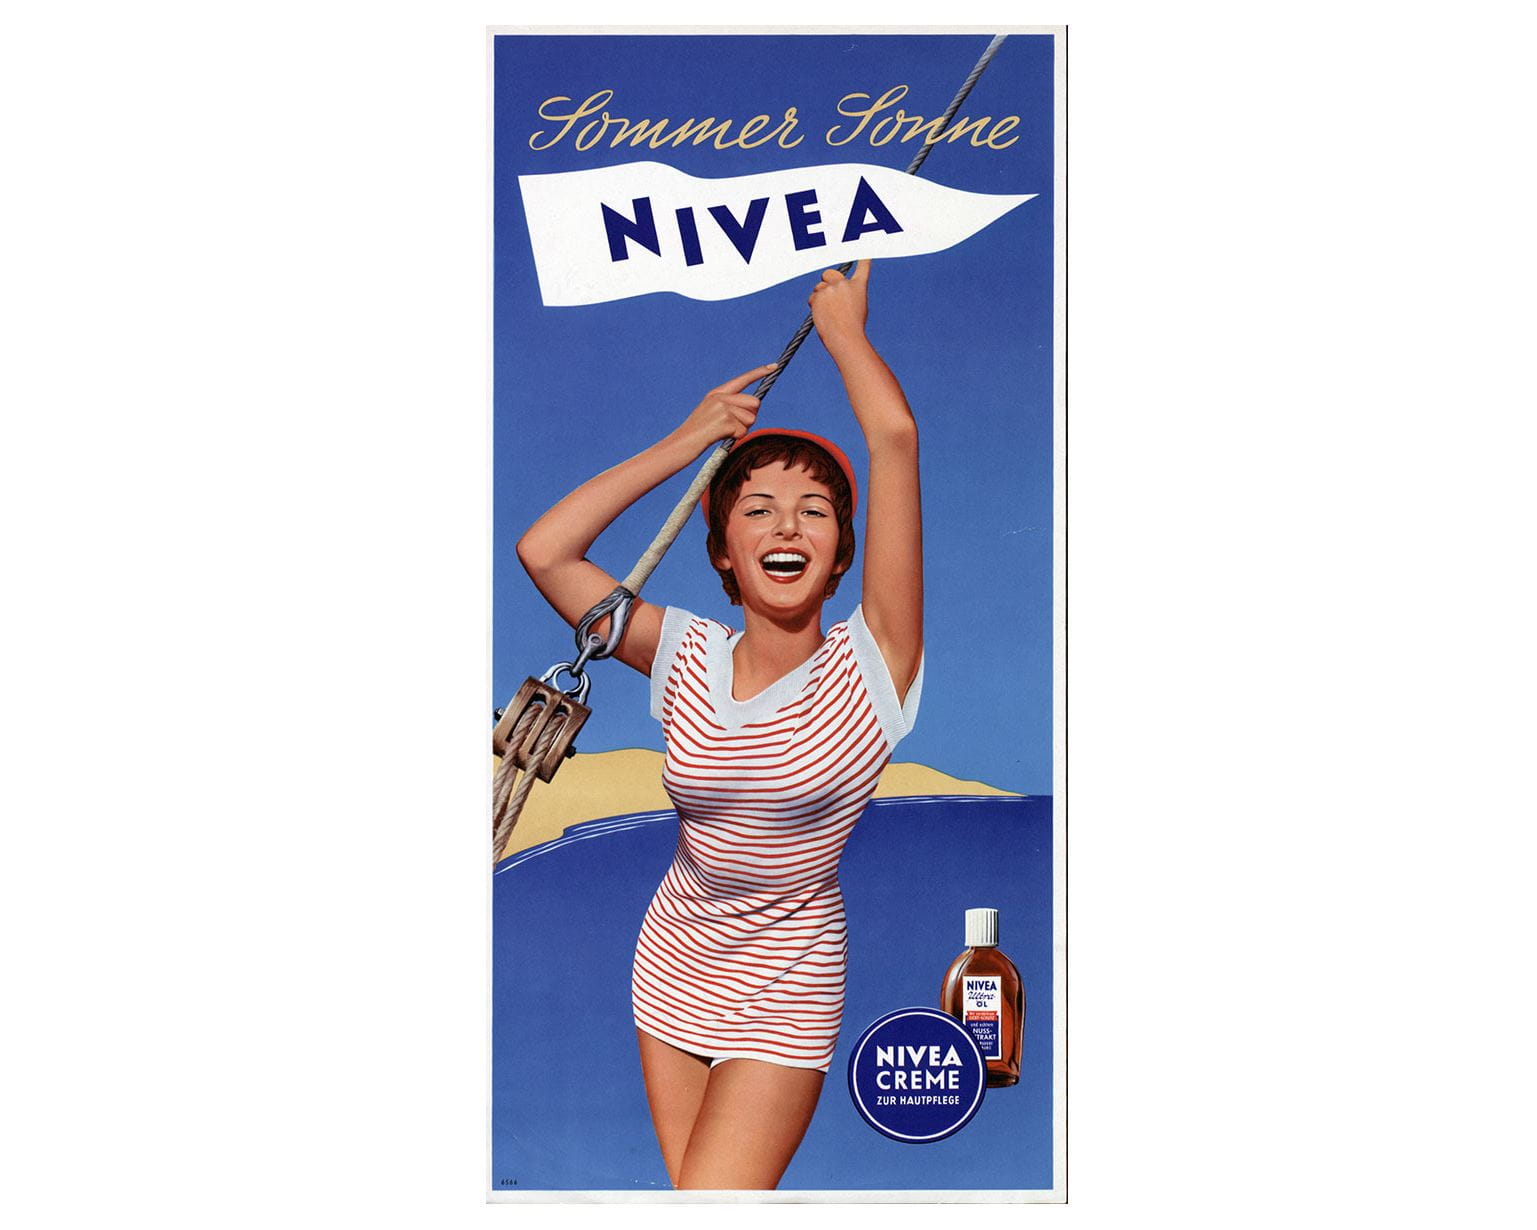 Cartaz publicitário NIVEA de 1955